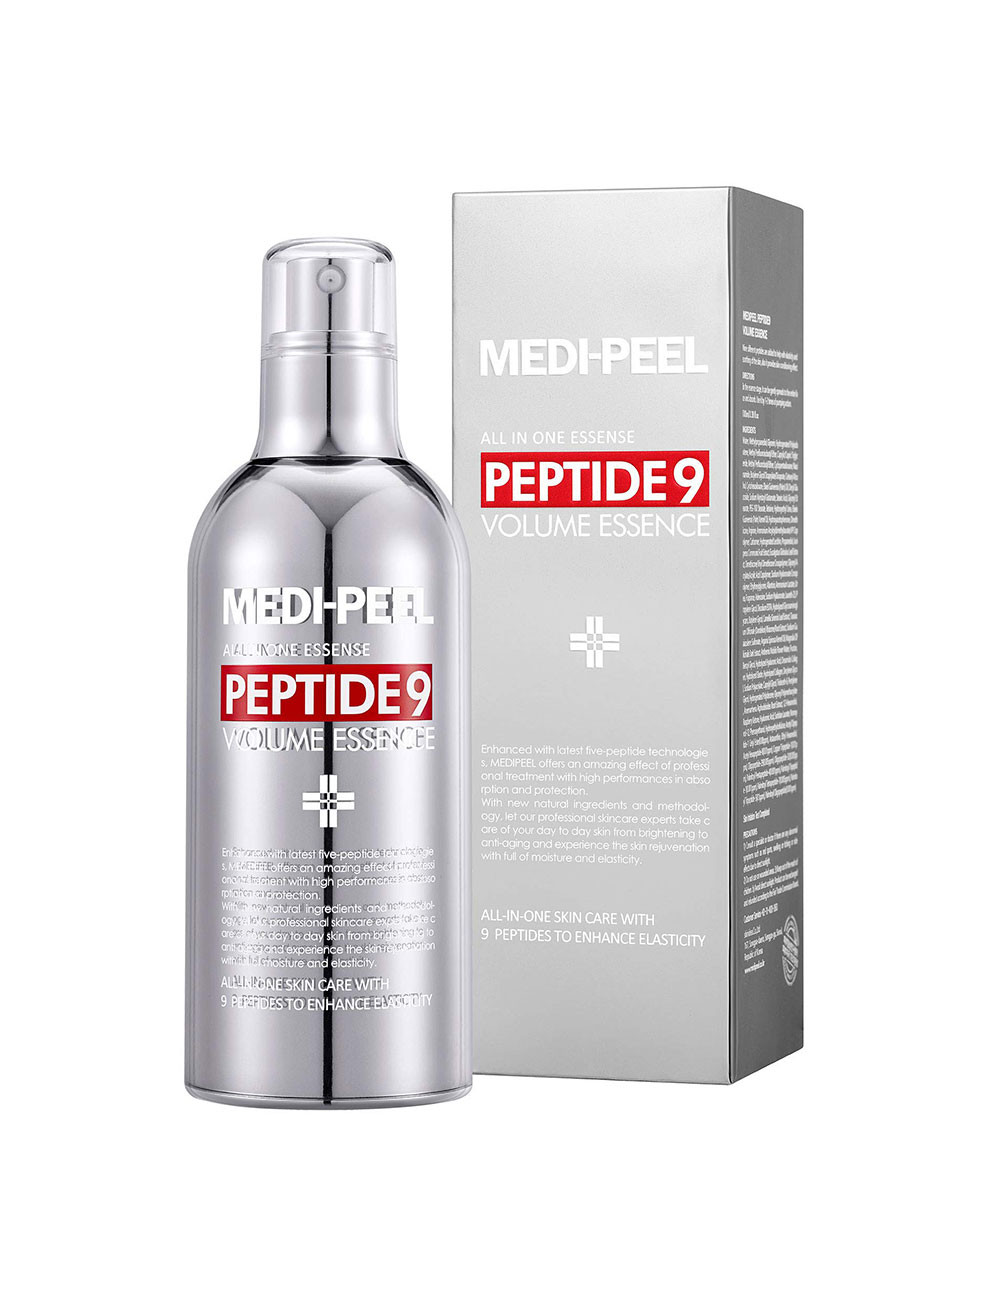 MEDI-PEEL Peptide 9 Volume Essence Red